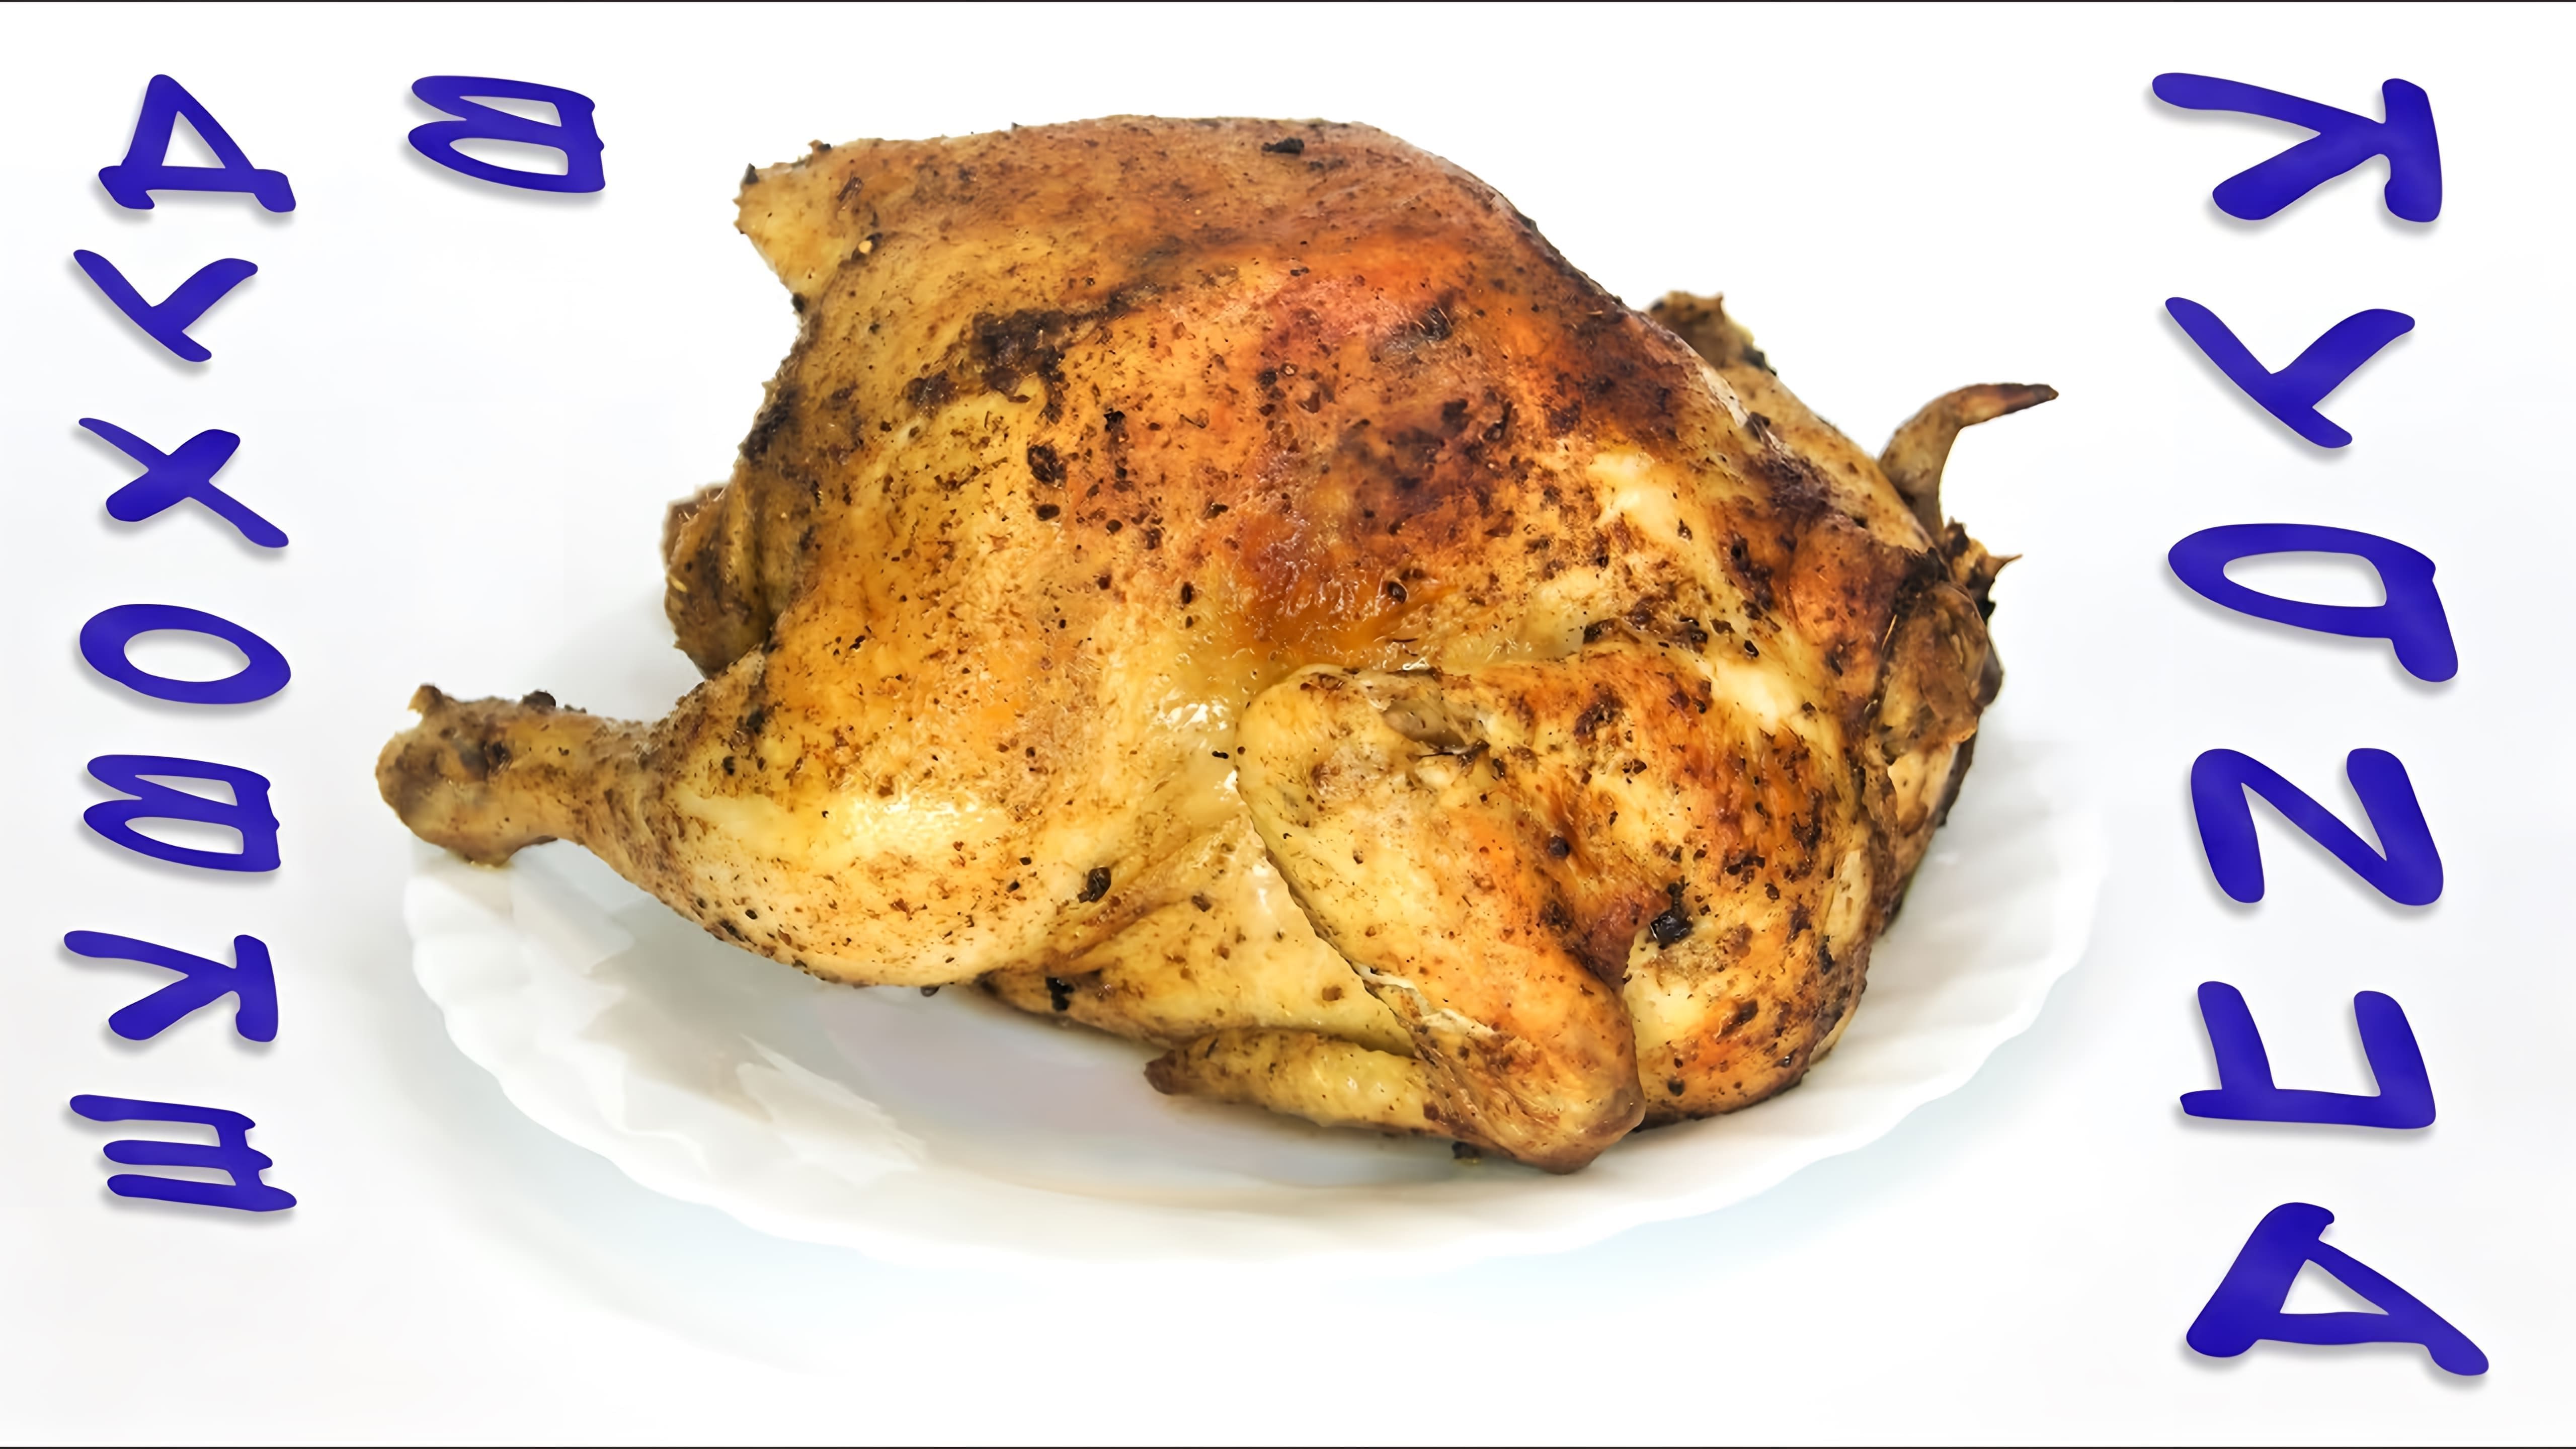 В этом видео демонстрируется рецепт приготовления курицы в духовке с хрустящей корочкой